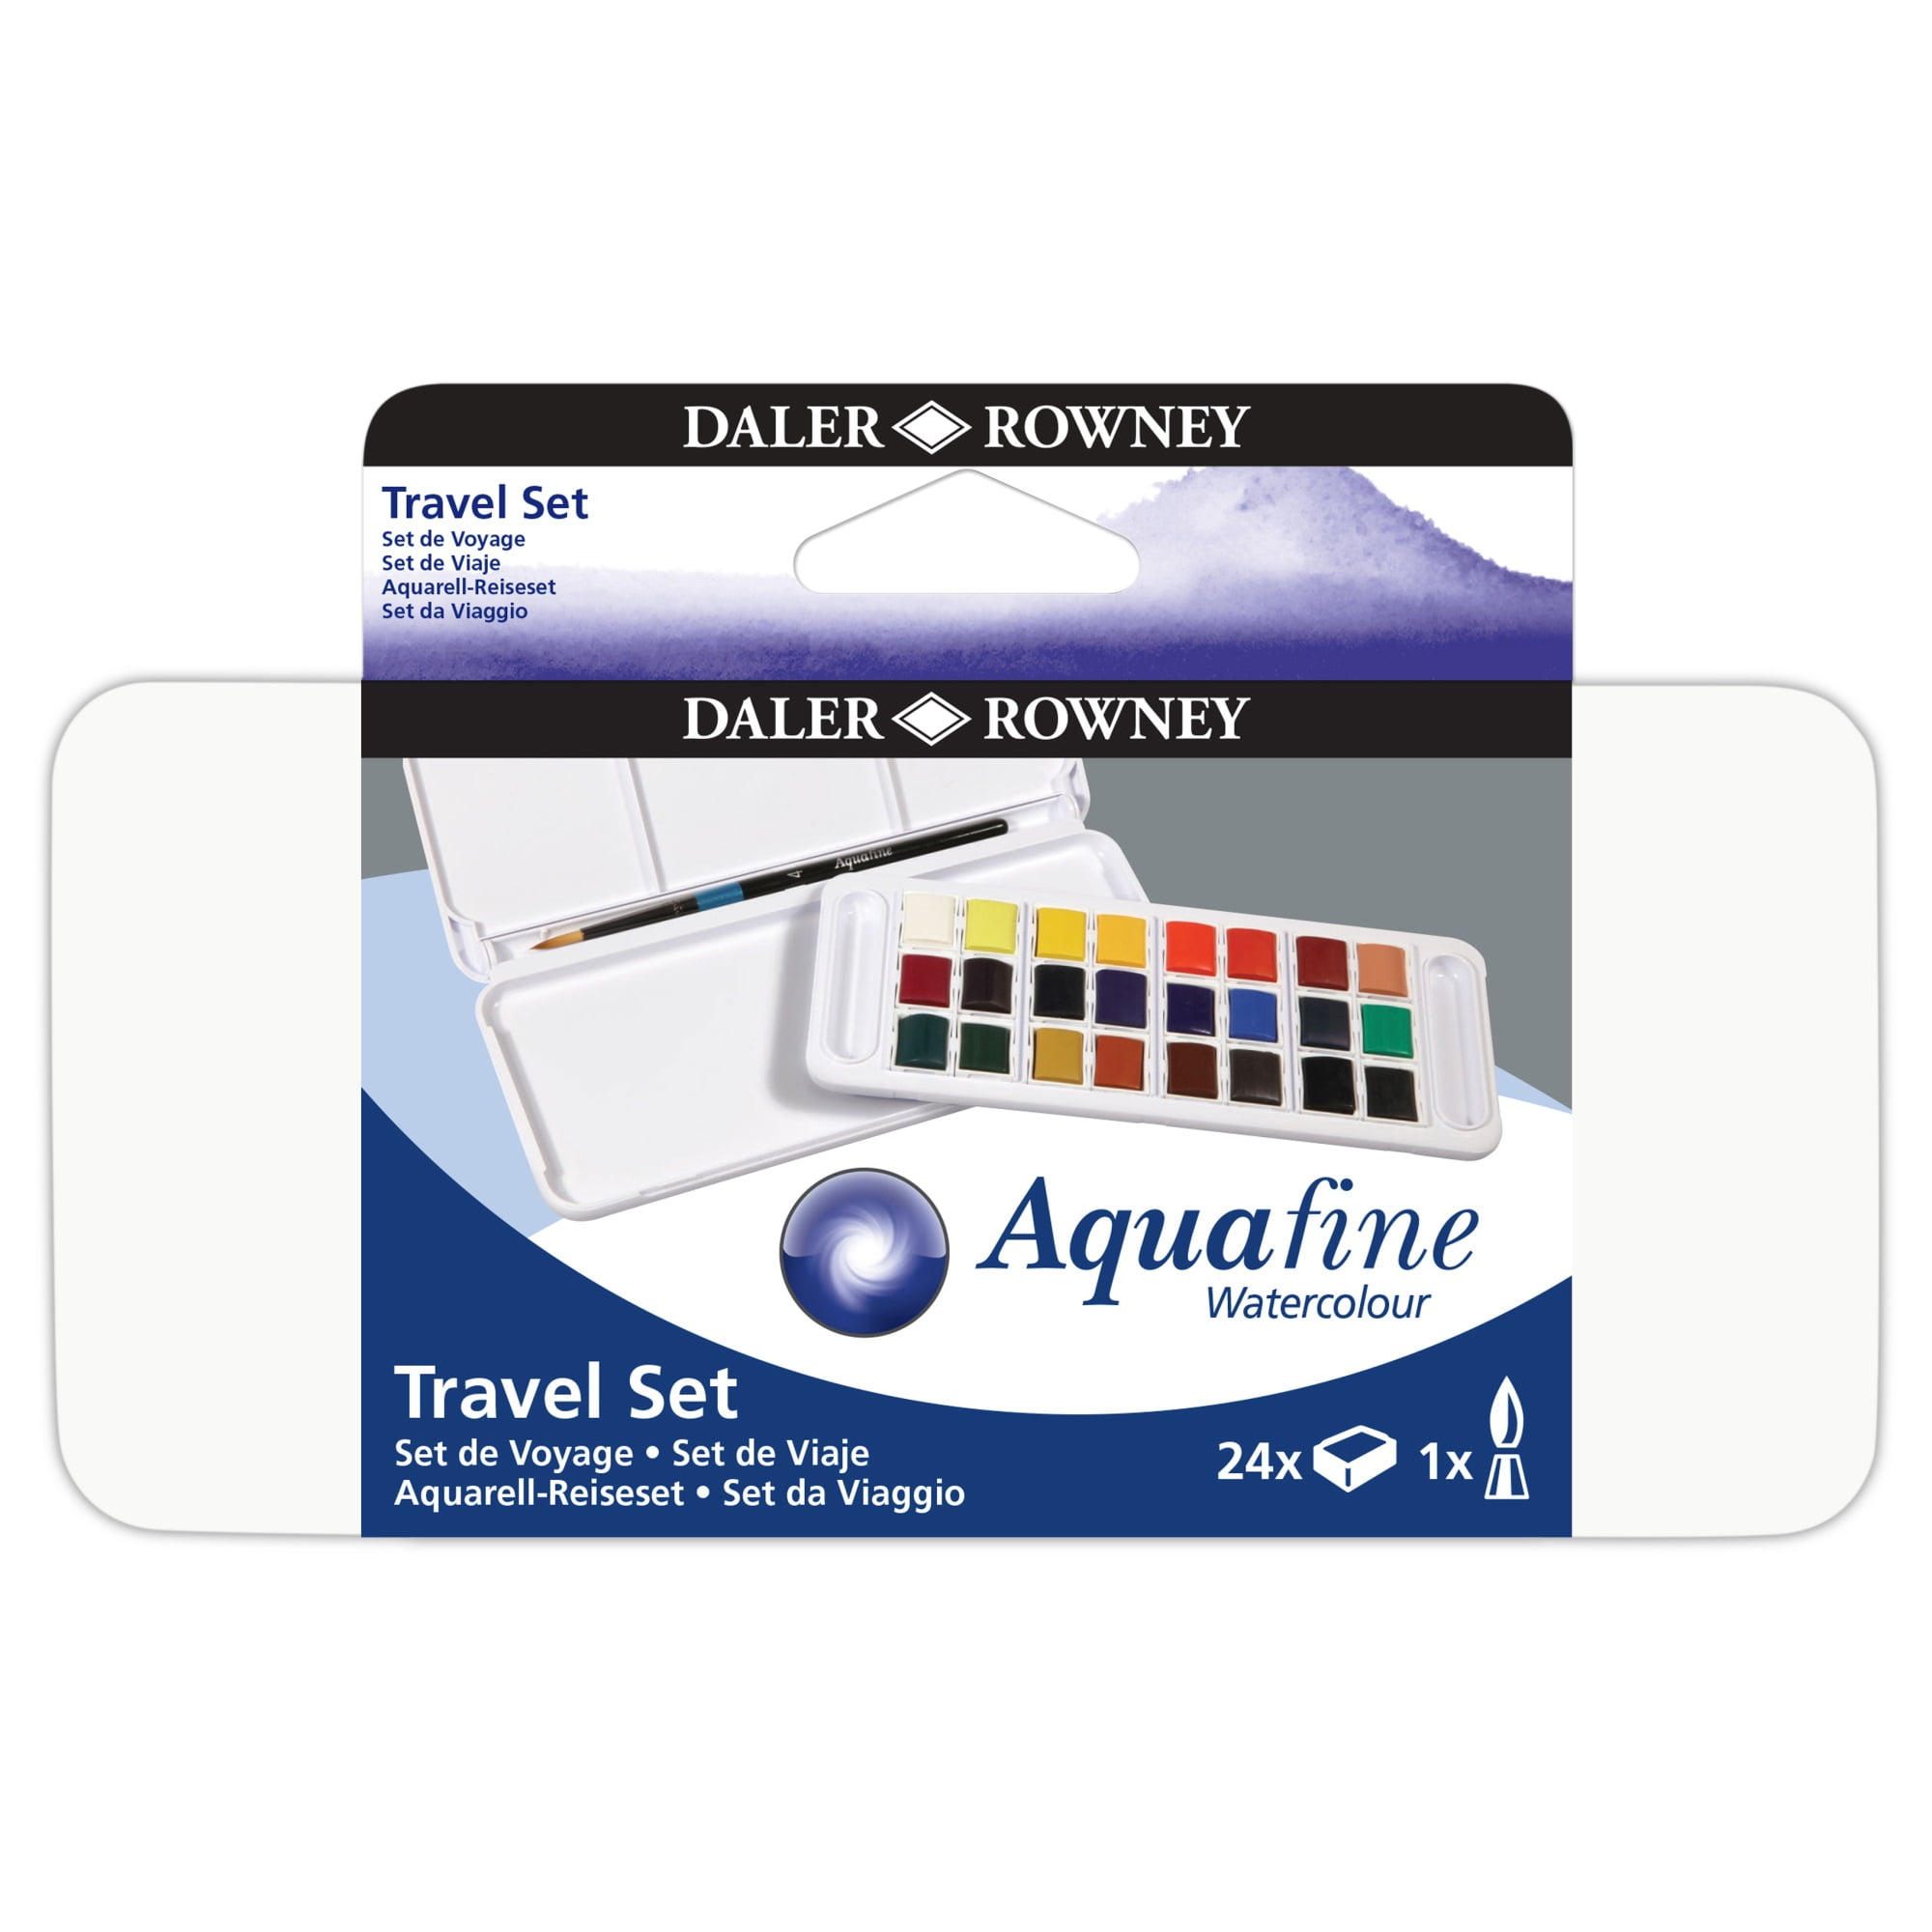 Daler-Rowney | Aquafine Watercolor Half Pan Travel Set of 12